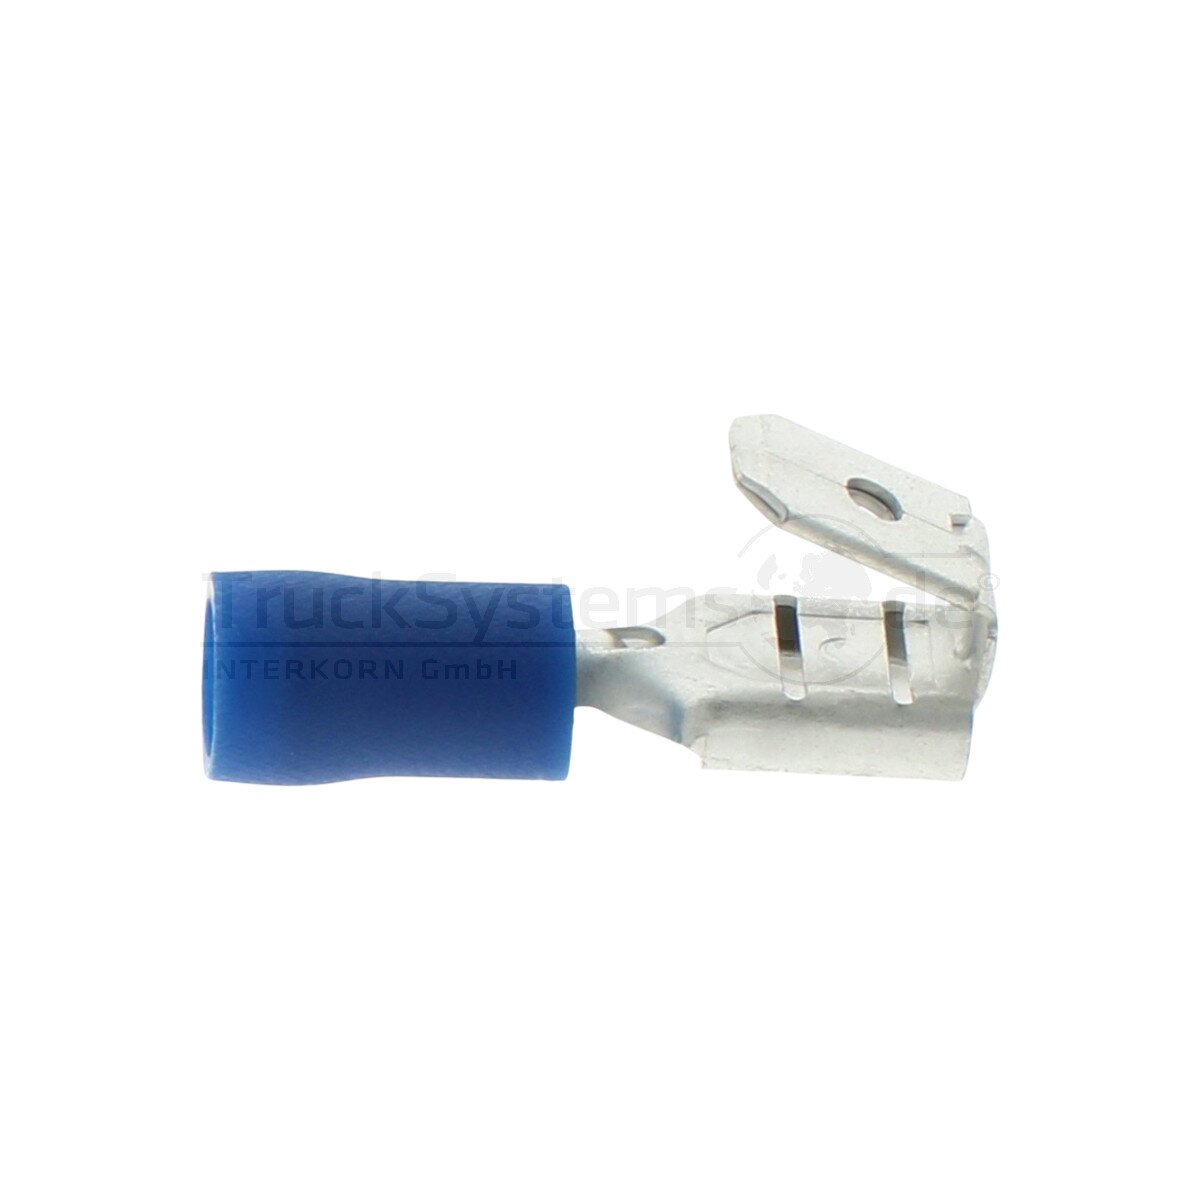 Steckverteiler blau 1 5-2 5 mm² - PBDD2-250 (50 pieces) - 50252551